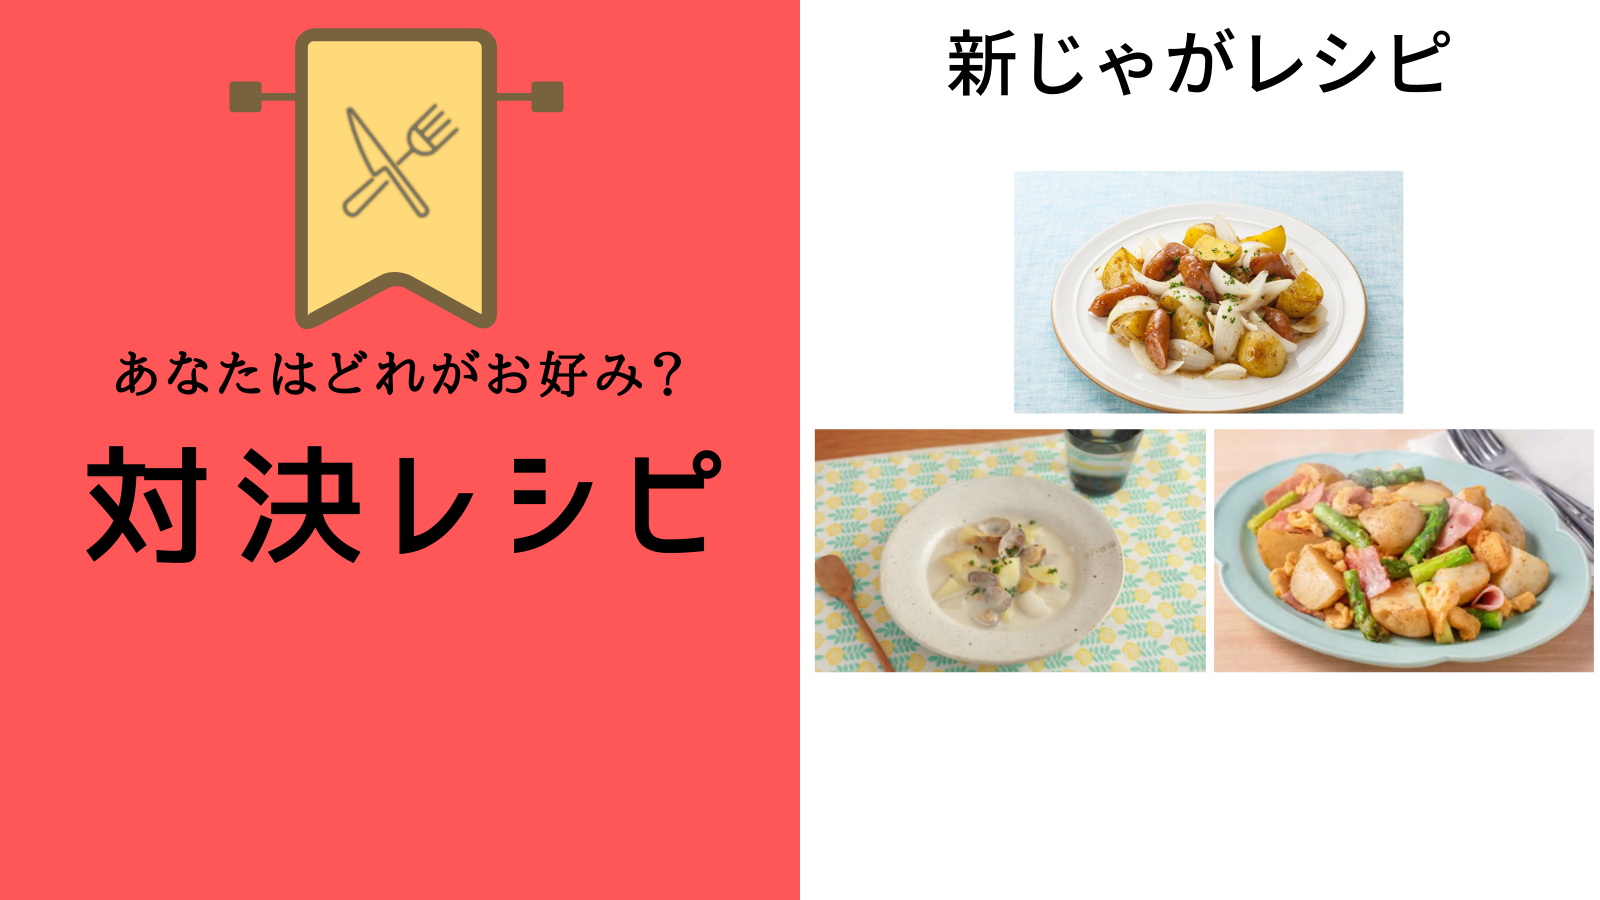 shinjaga-recipe_banner